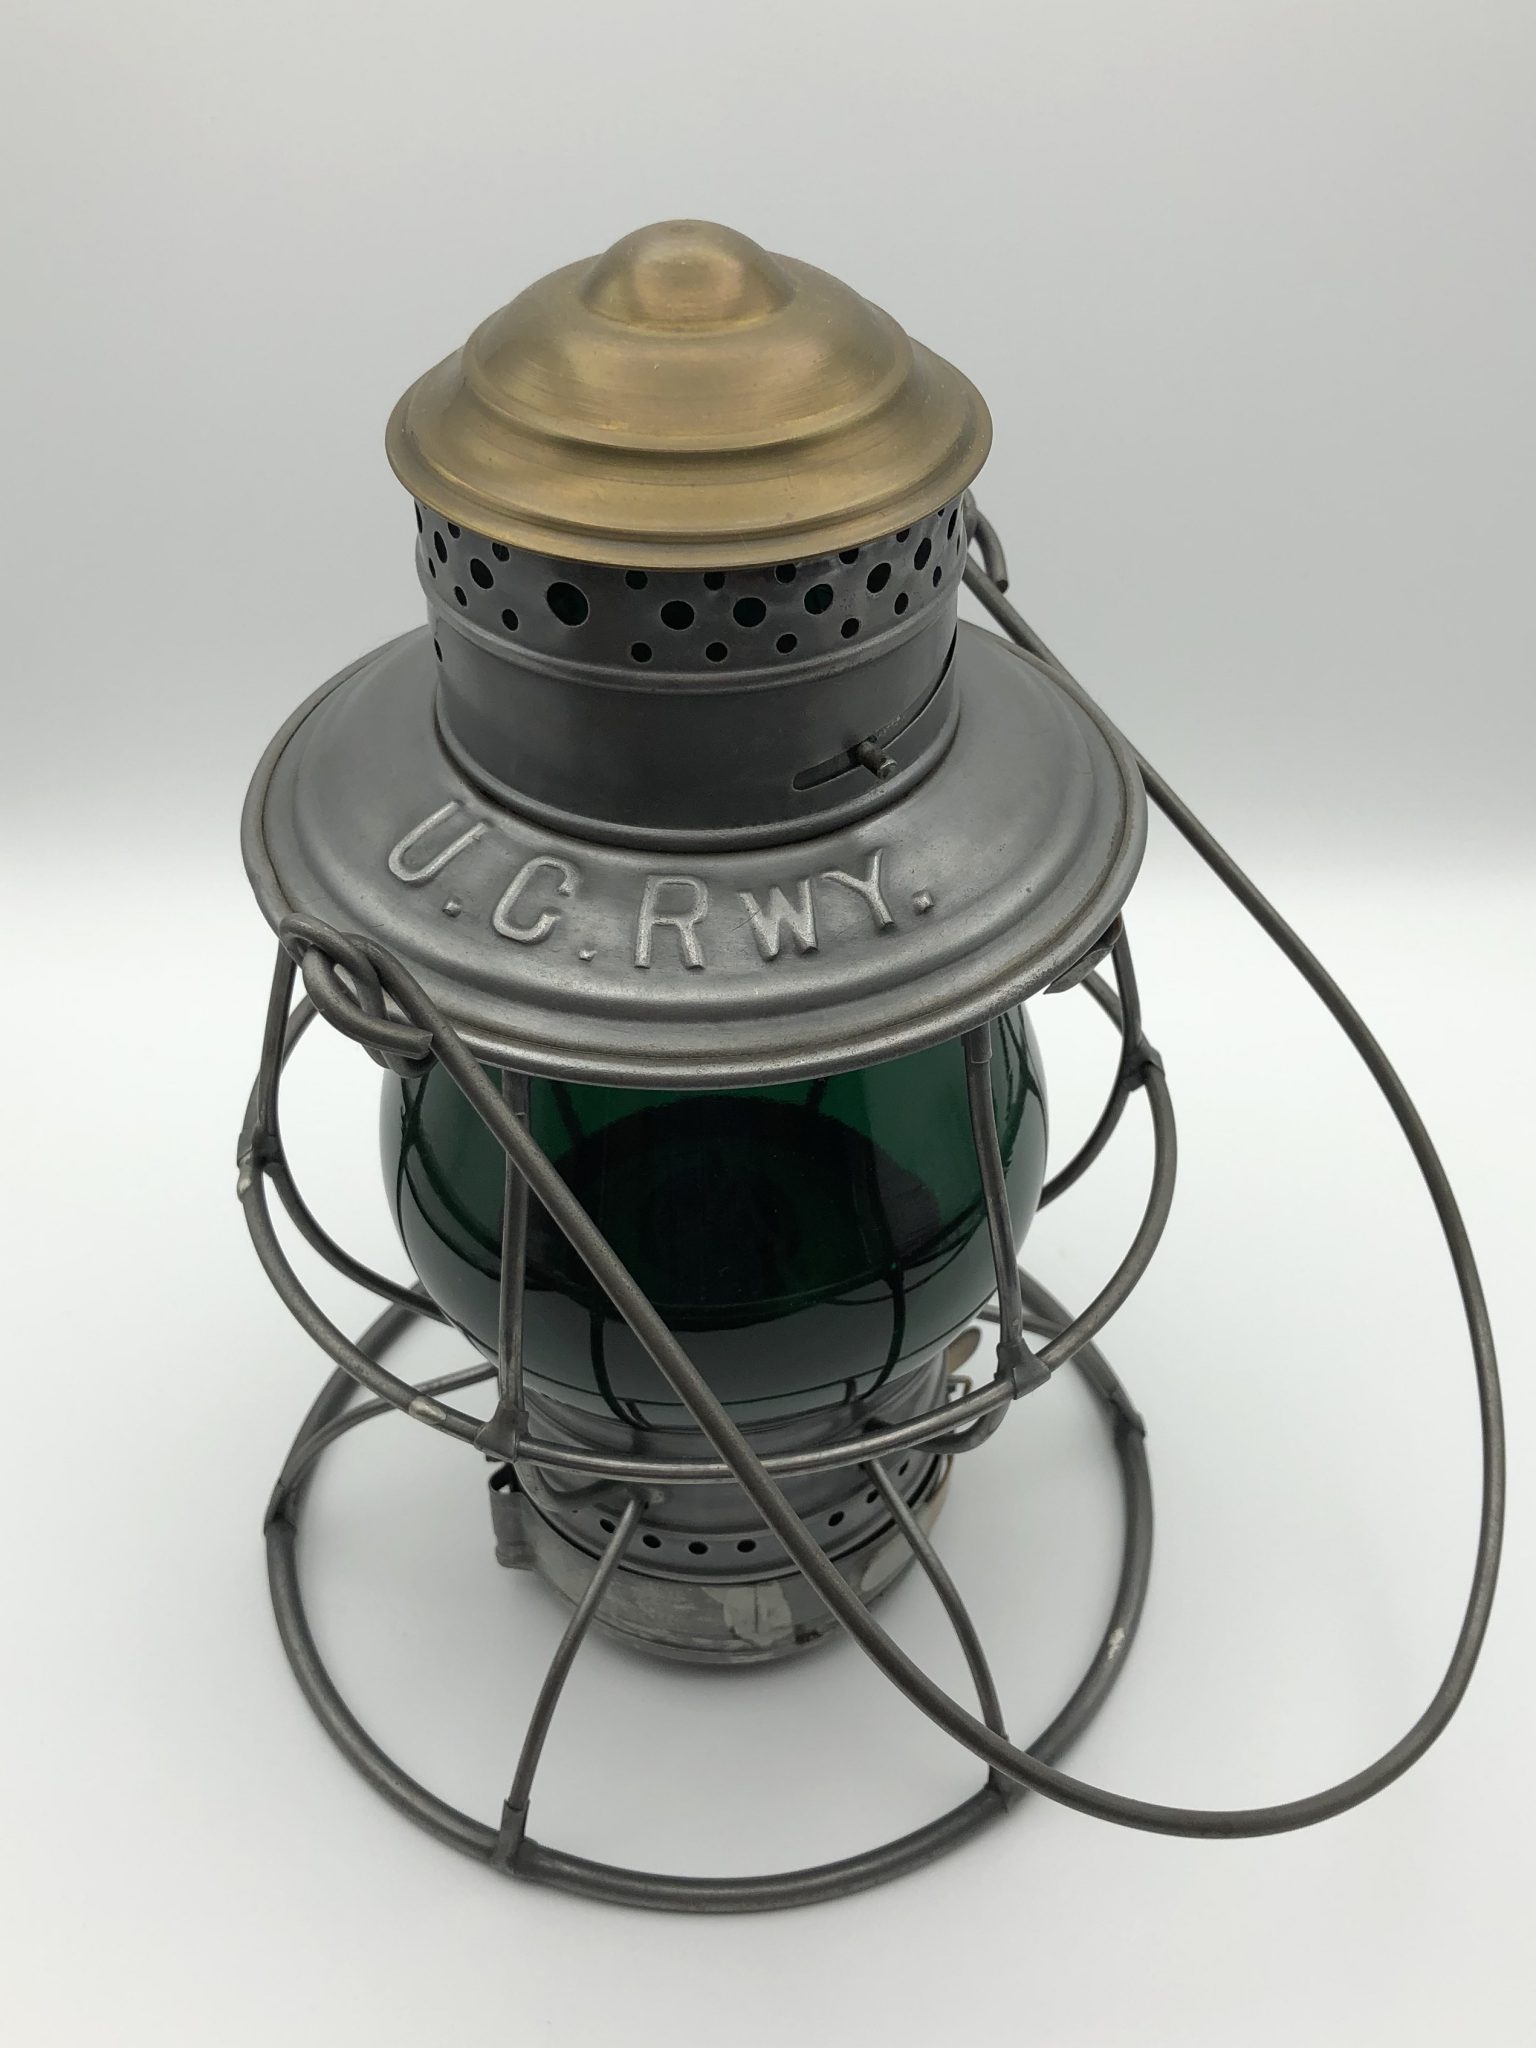 ucrwy railroad lantern-utah central railway-antique lantern-railroad antique-railroadiana